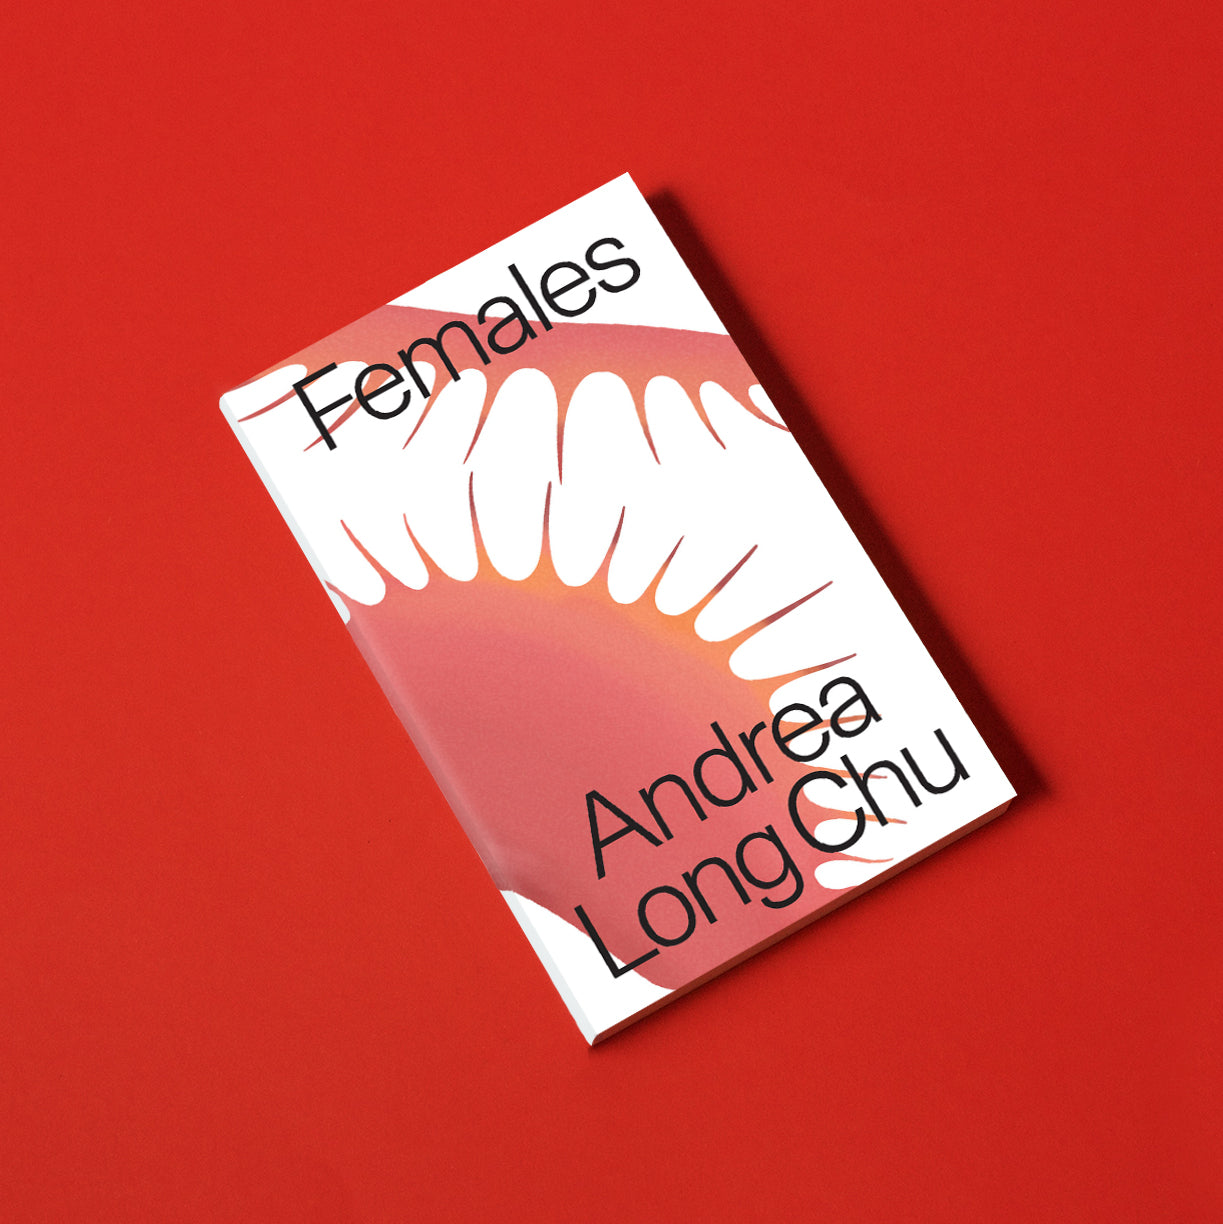 Females, by Andrea Long Chu